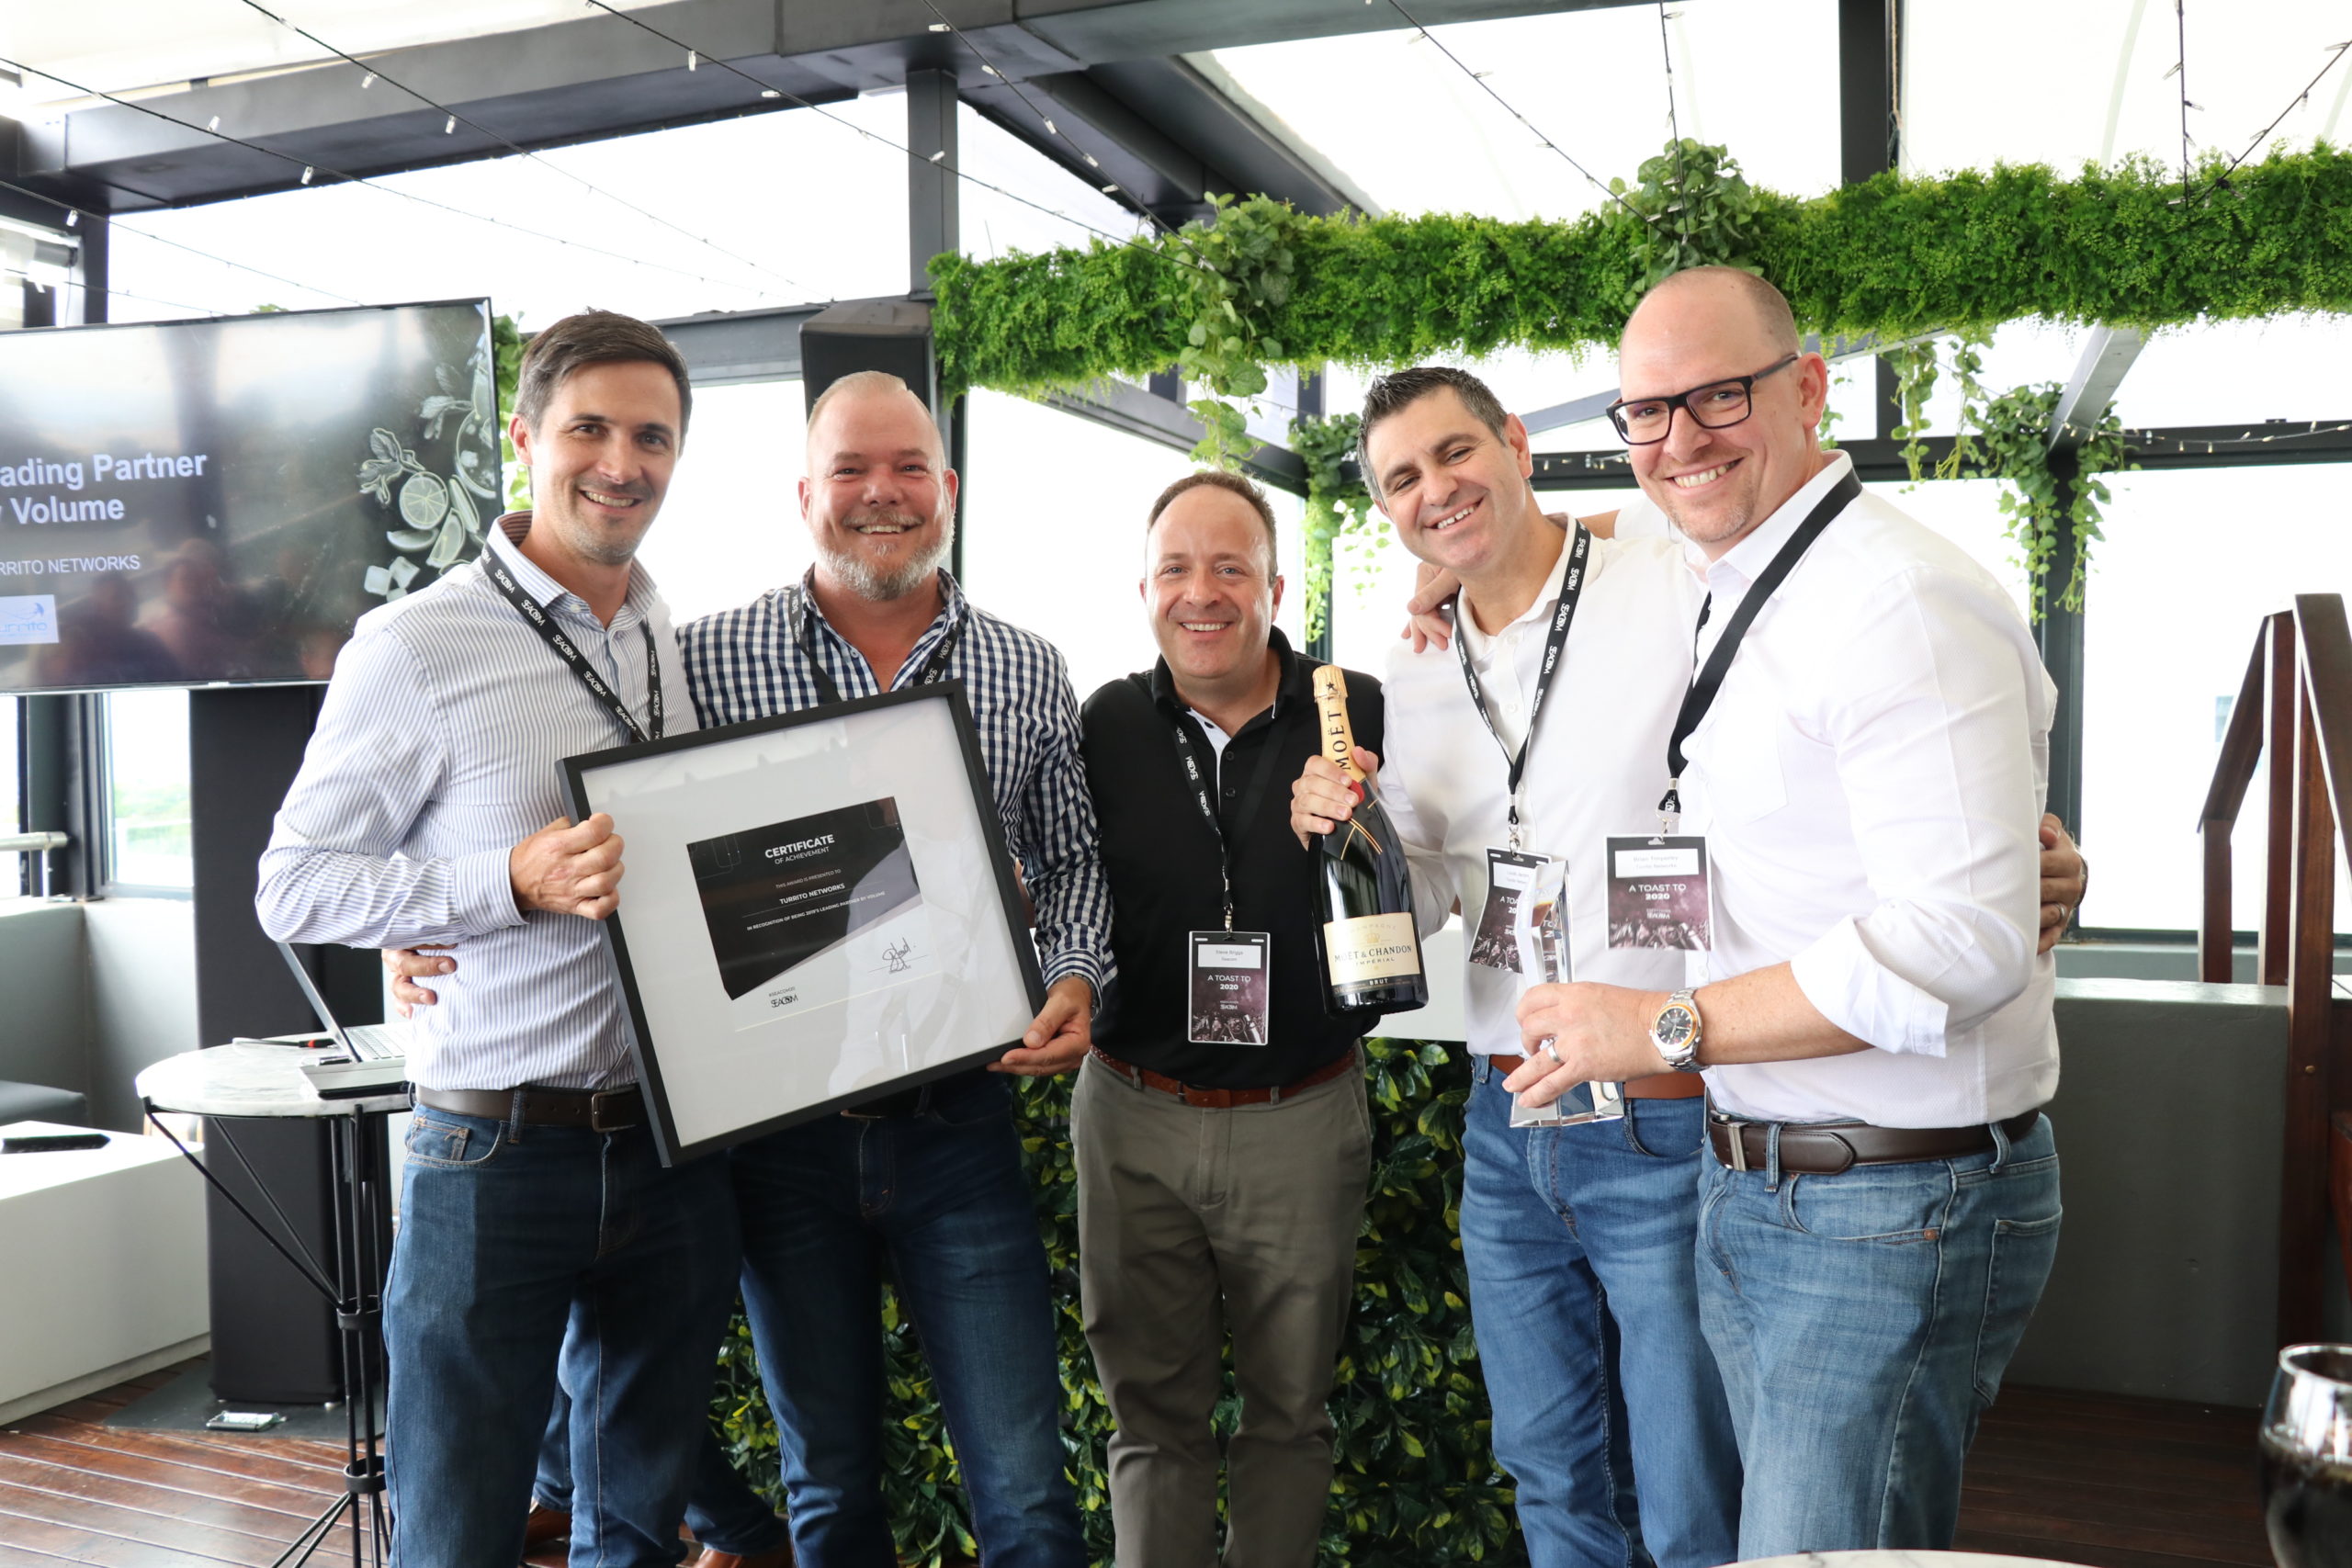 Turrito Executives accept the SEACOM Partner of the Year awards